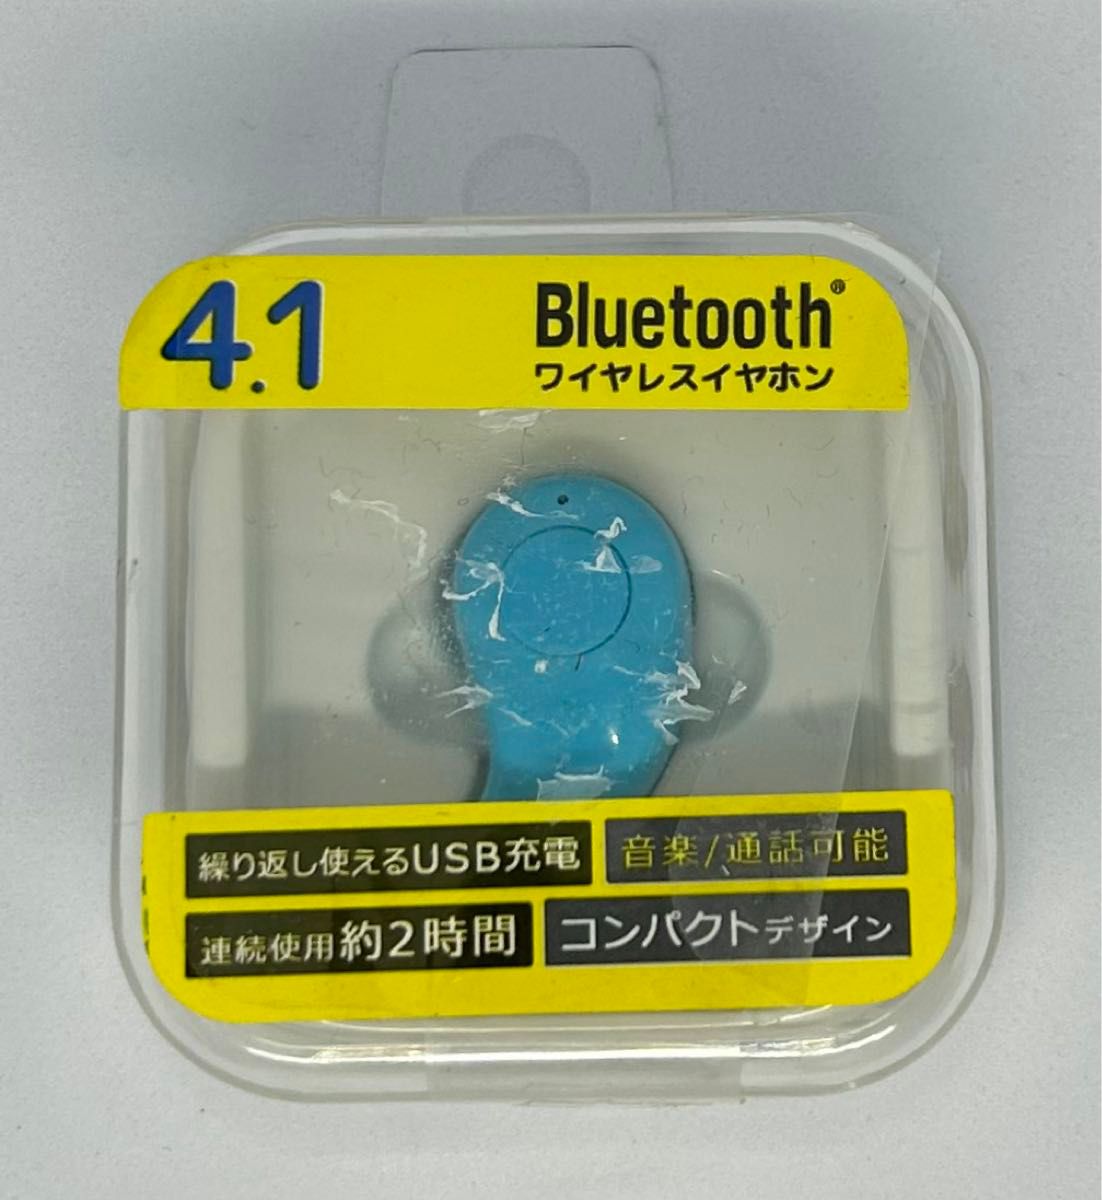 【未開封】ブルー 4.1Bluetooth ワイヤレスイヤホン 繰り返し使えるUSB充電 音楽/通話可能 連続使用約2時間